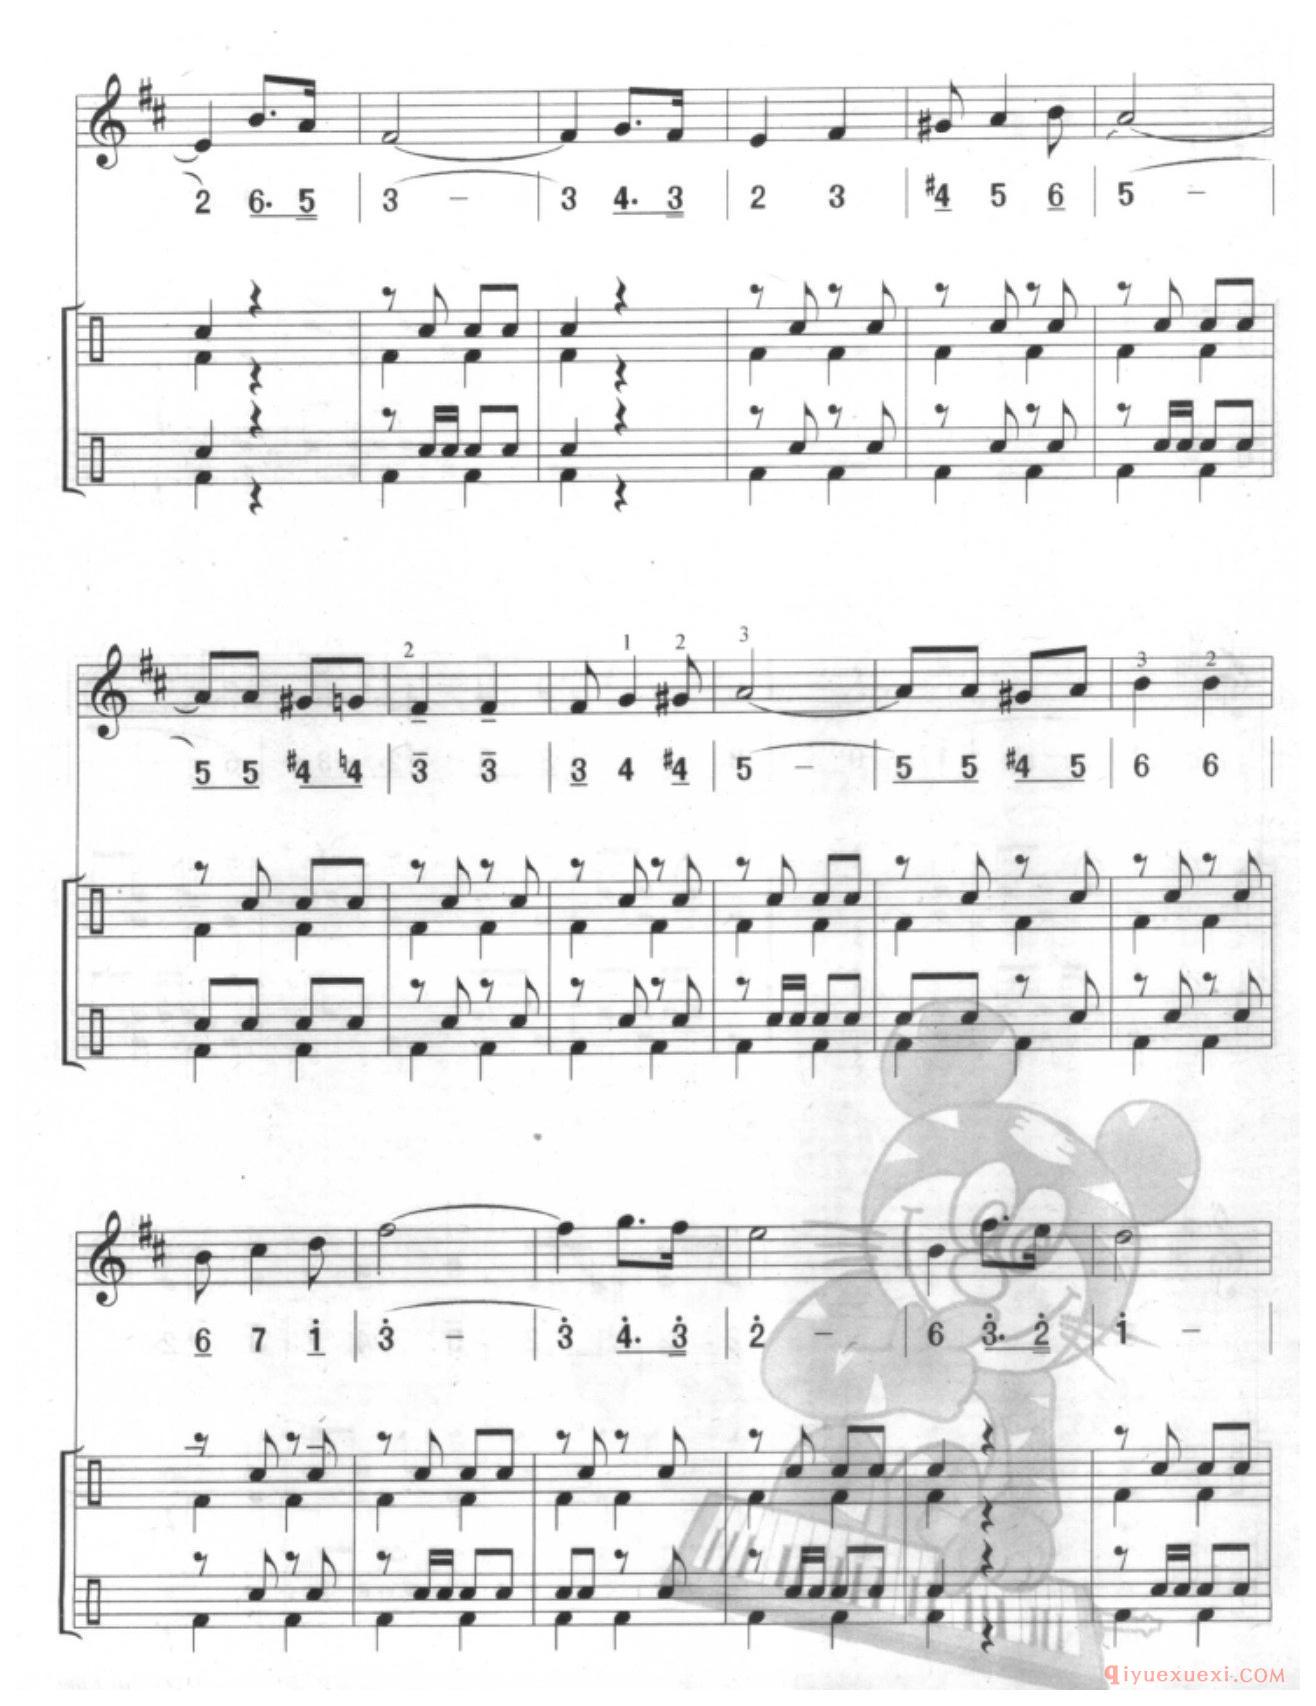 口风琴多声部乐曲《阿童木之歌（总谱)》加入打击乐的练习